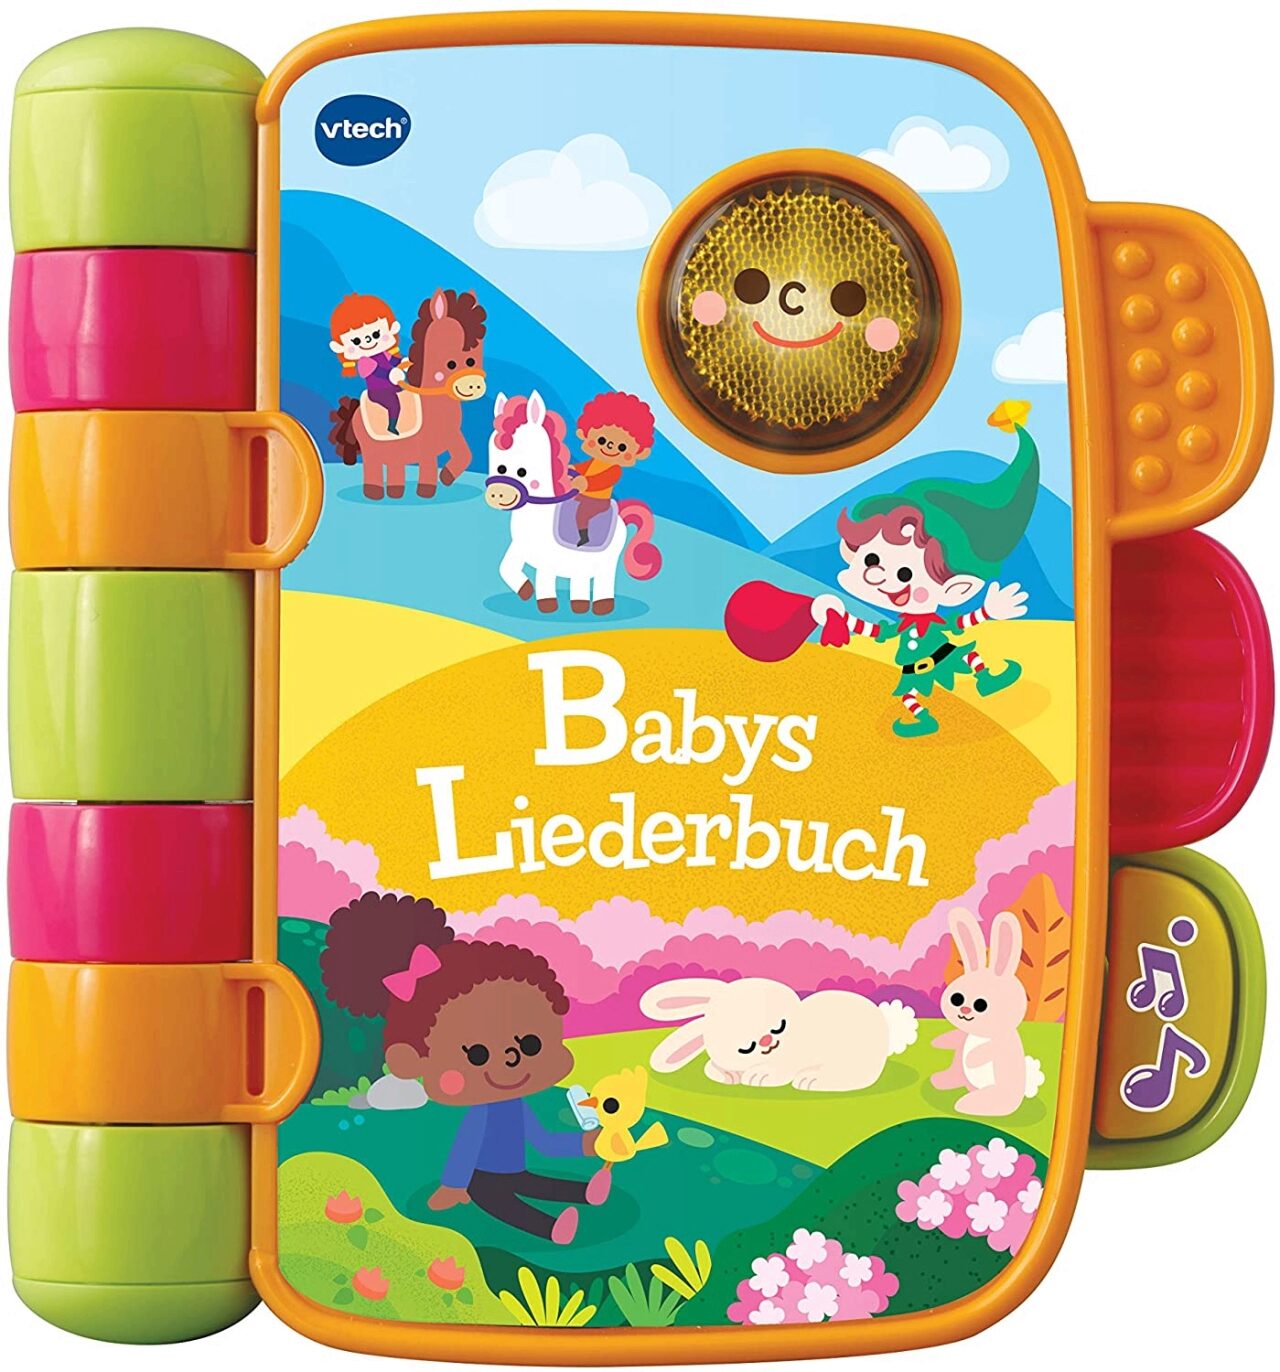 VTECH Liederbuch 80-138364 Babys